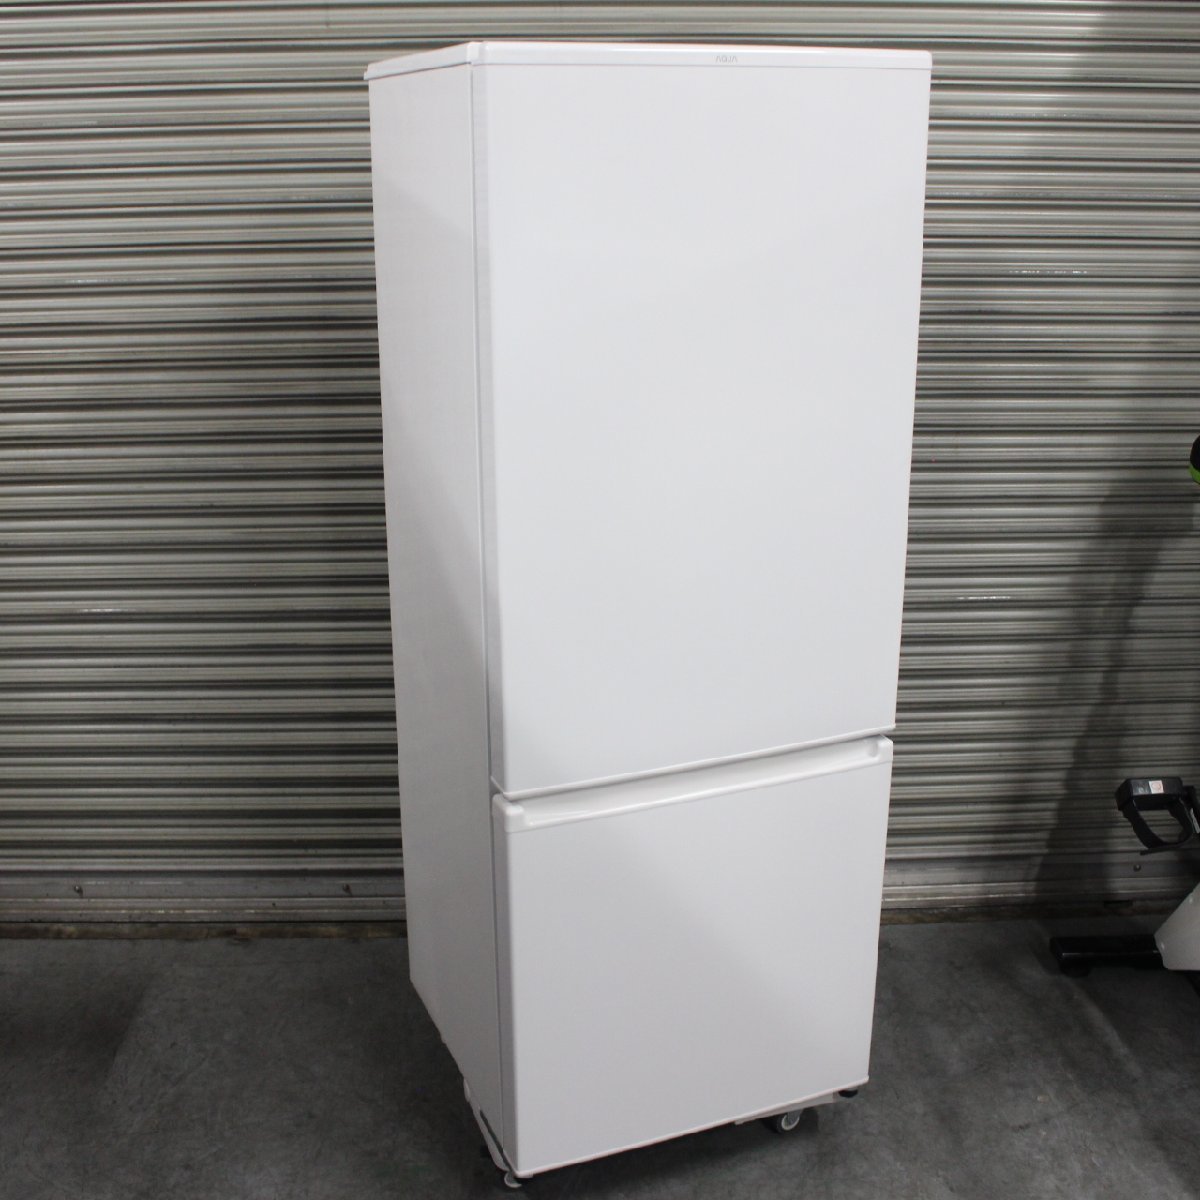 横浜市中区にて アクア 冷蔵庫 AQR-20M 2021年製 を出張買取させて頂きました。